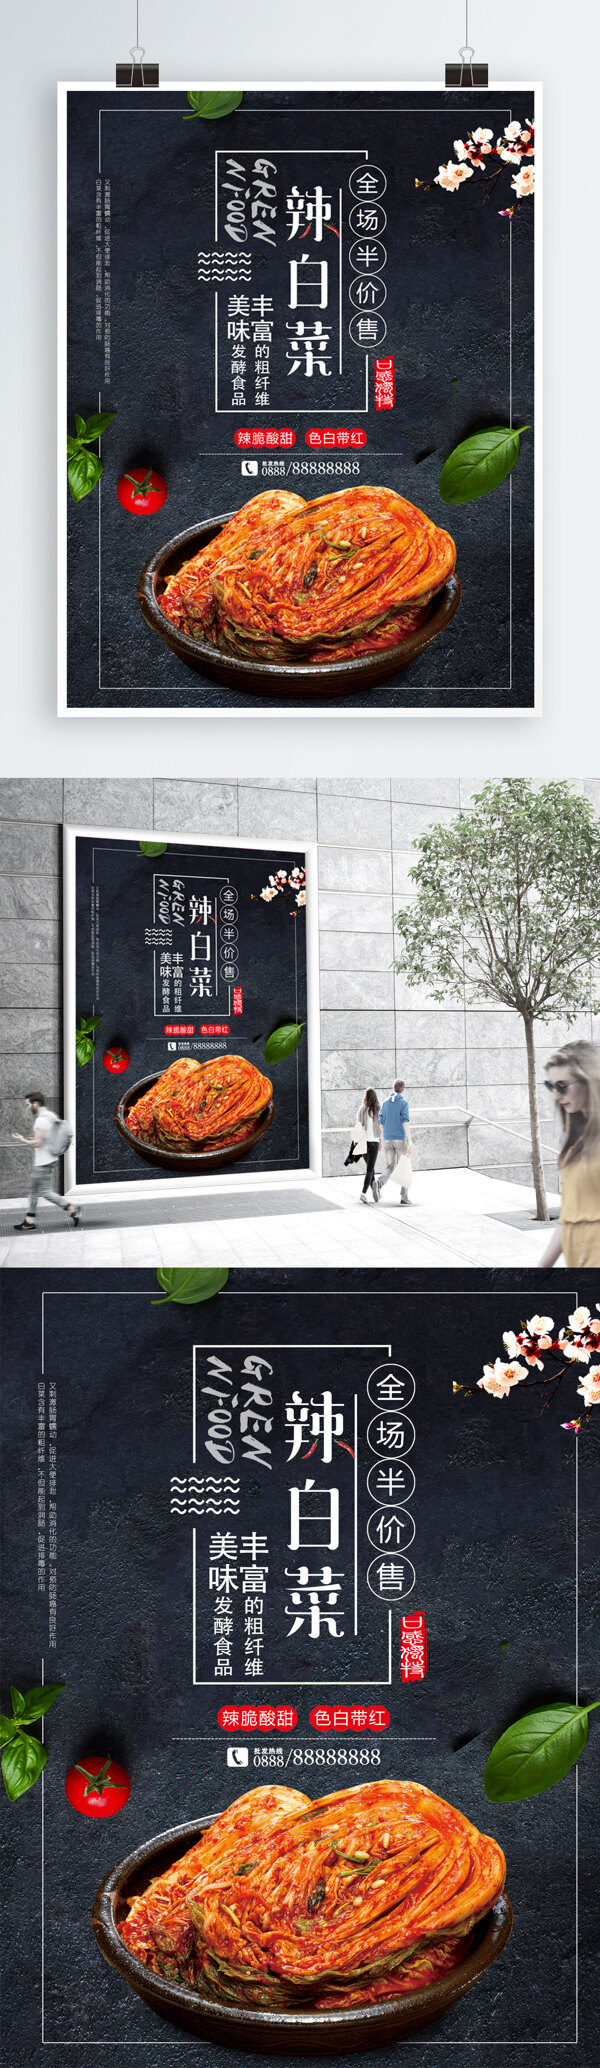 辣白菜美食促销宣传海报